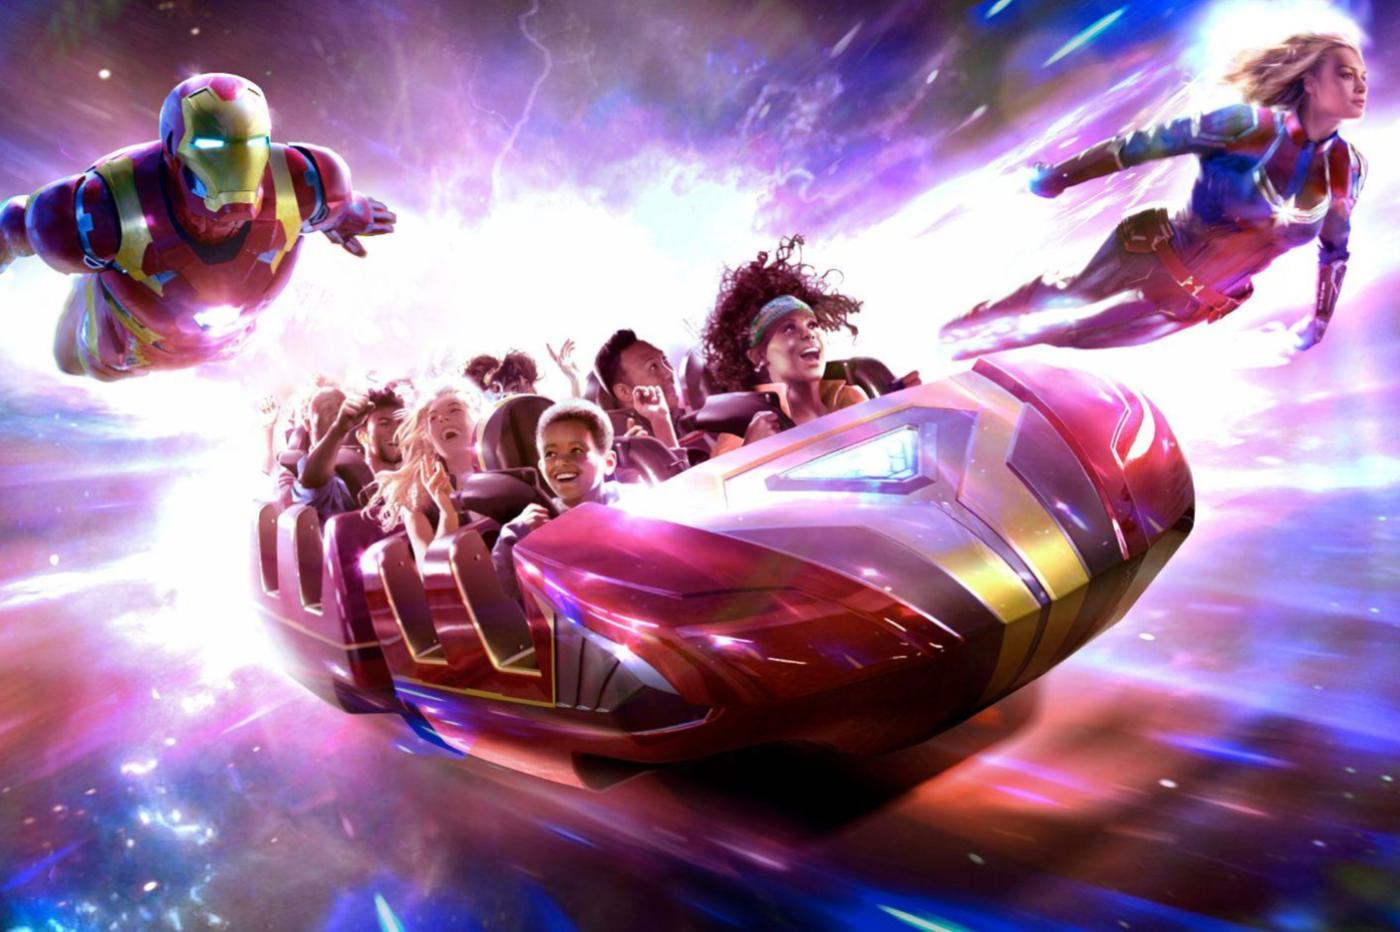 Image promotionnelle de l'attraction Avengers Assemble Flight Force montrant le wagon, Iron Man et Captain Marvel